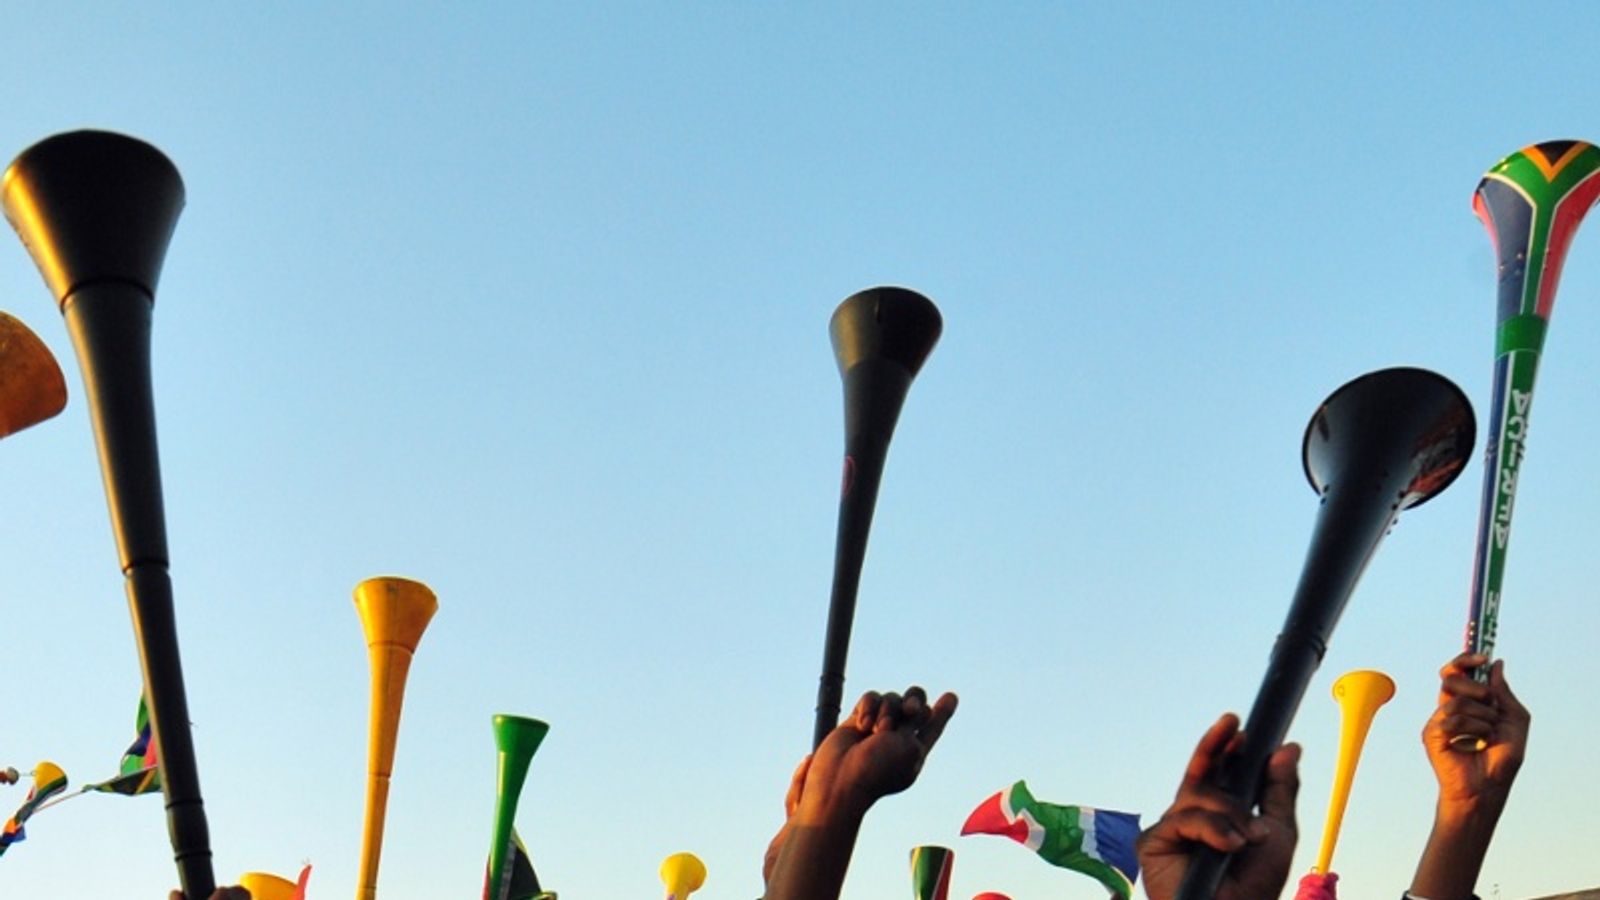 https://e0.365dm.com/10/07/1600x900/vuvuzela-generic_2480159.jpg?20100723124232